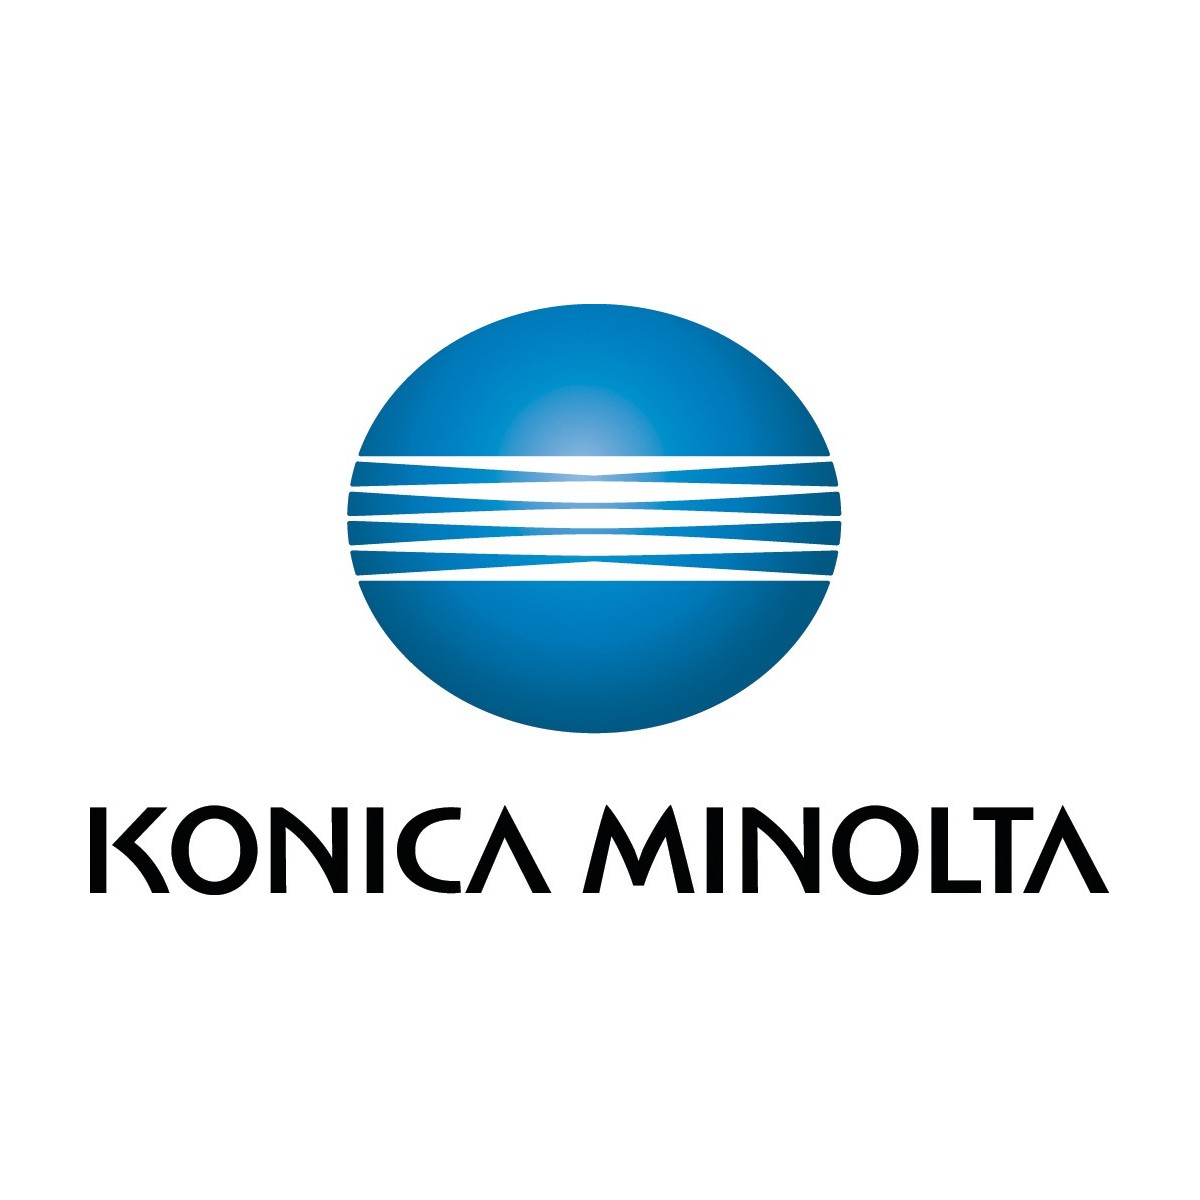 Konica Minolta Magic Color 2 Fuser Unit - 12000 pages